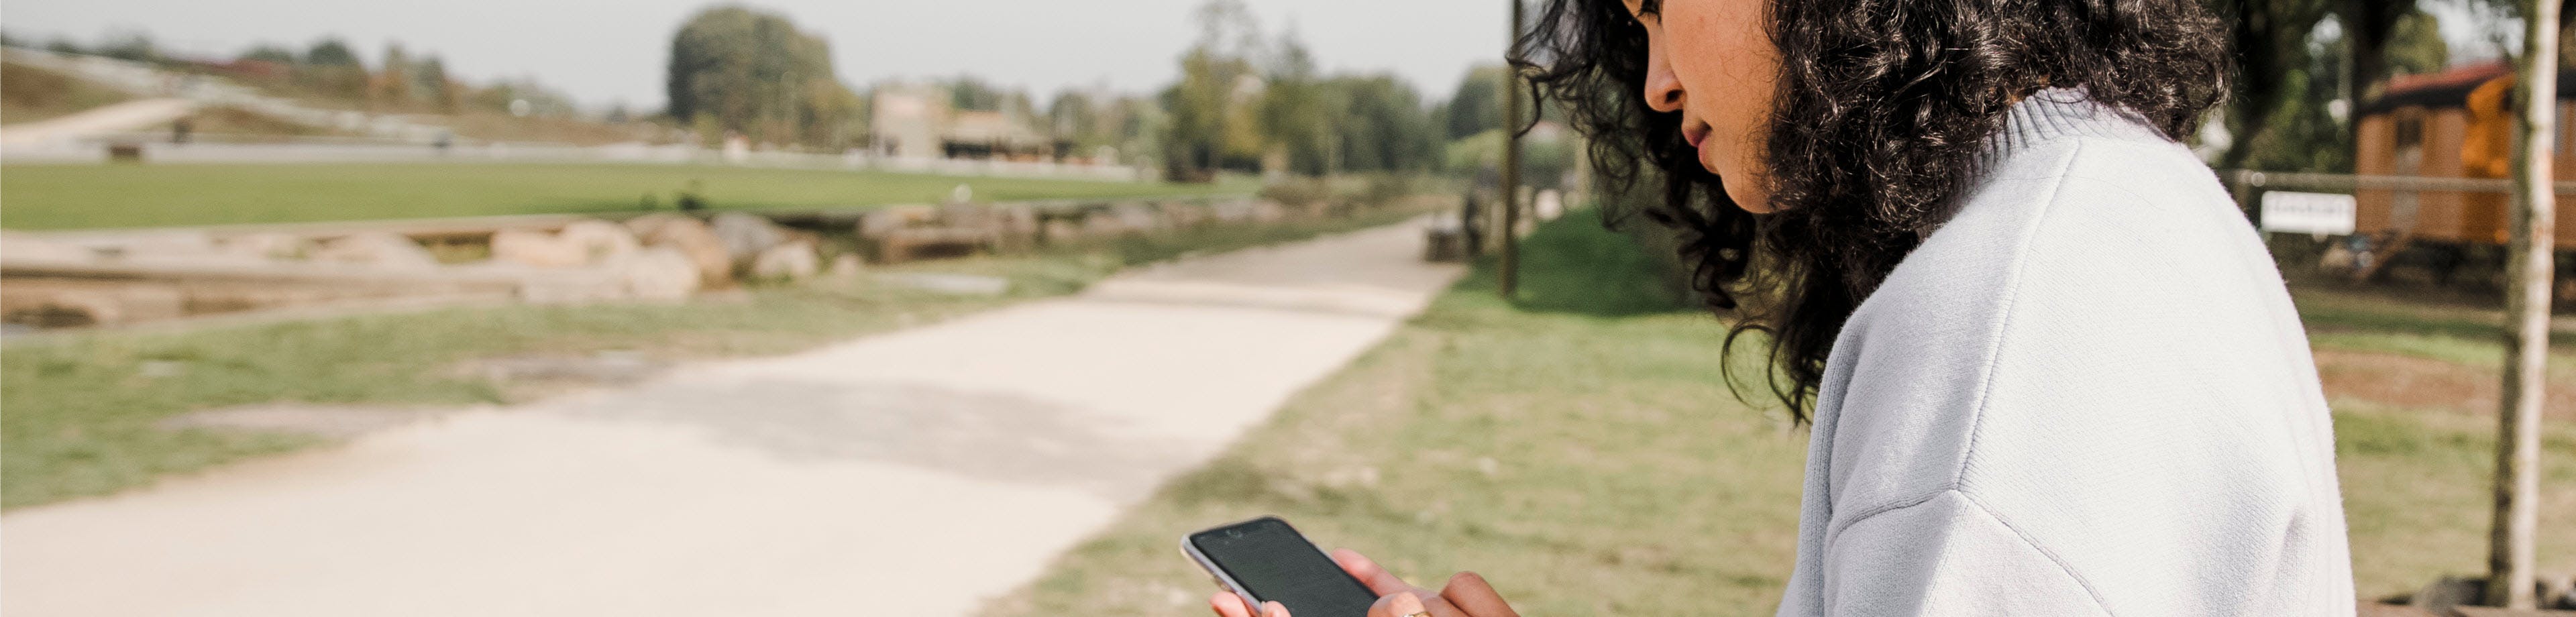 Een vrouw zit in een park en kijkt op haar smartphone.